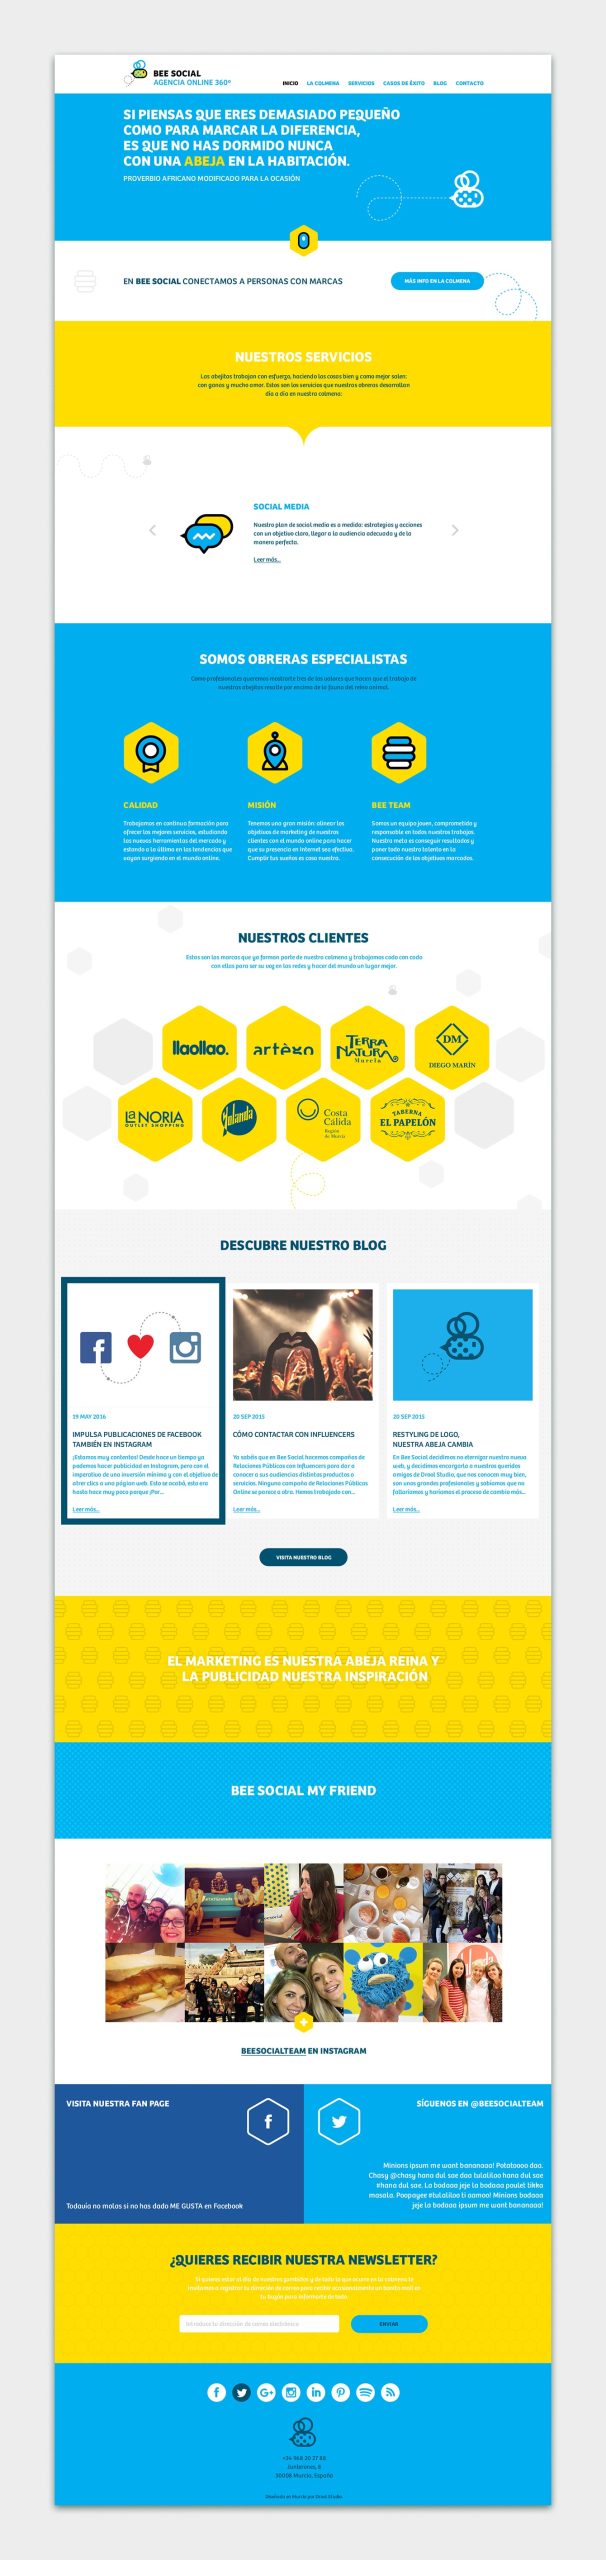 Pantalla del diseño web completo de Bee Social